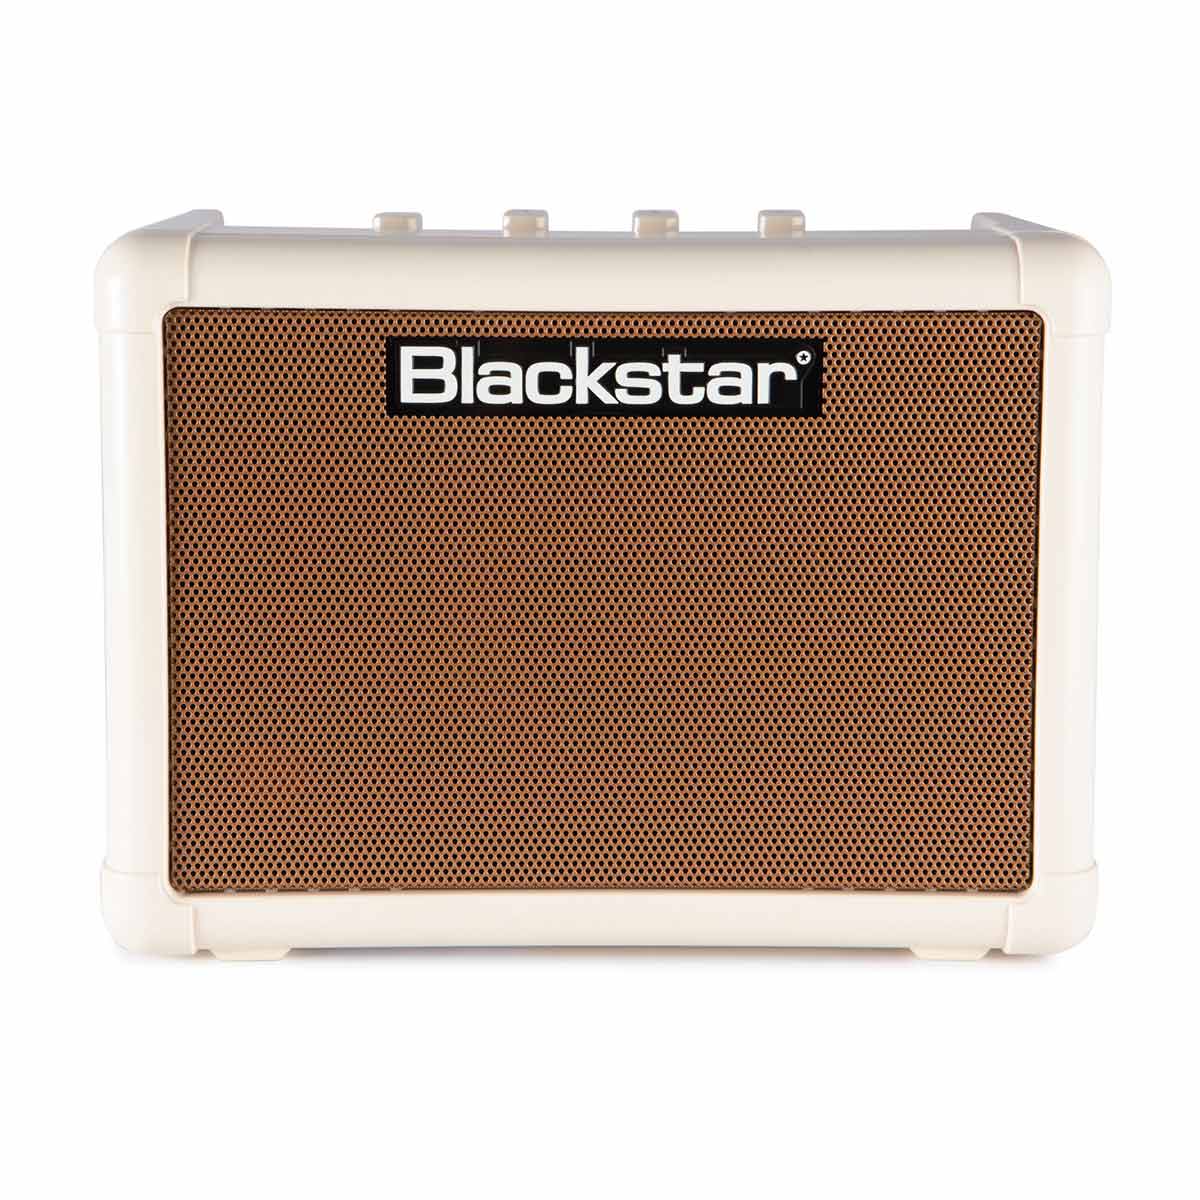 Blackstar FLY3 Acoustic アコースティックミニアンプ 【ブラックスター】